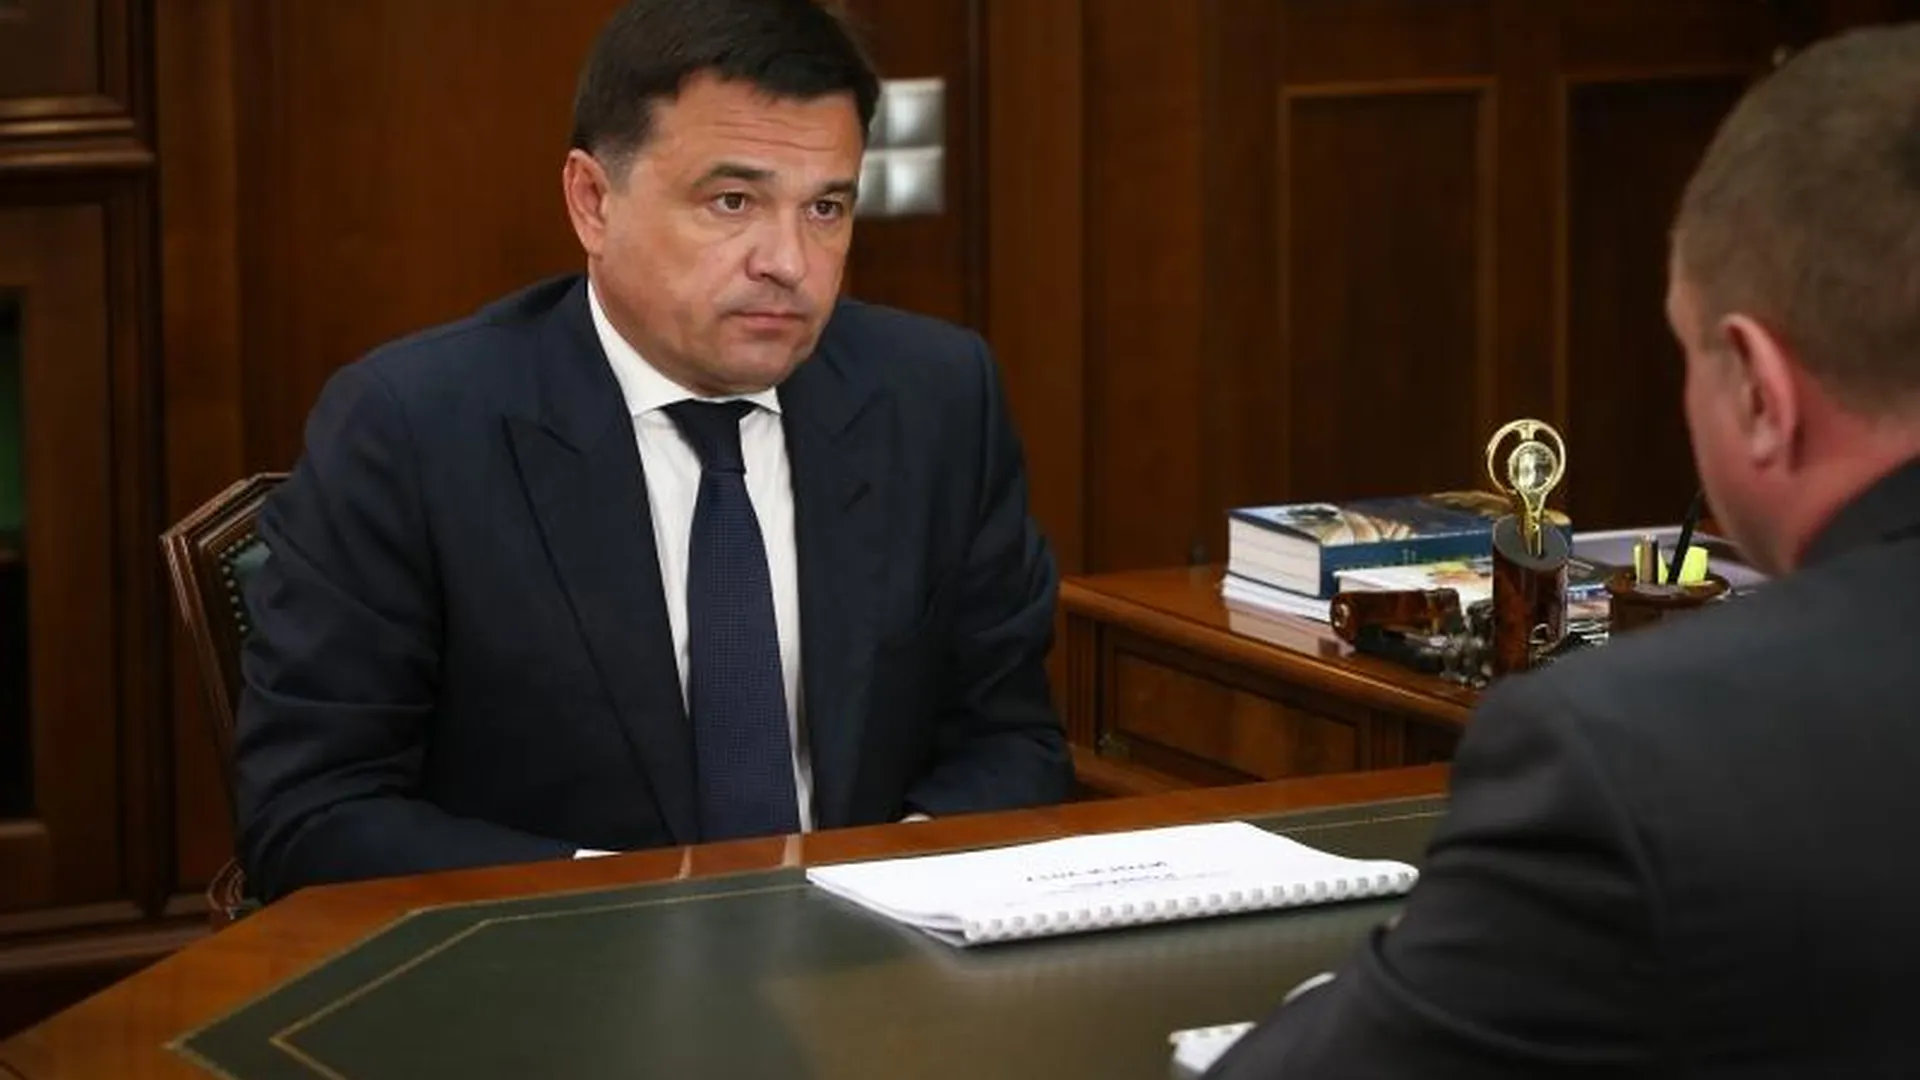 Воробьев выслушал отчет главы Рошаля об итогах работы в 2017 году